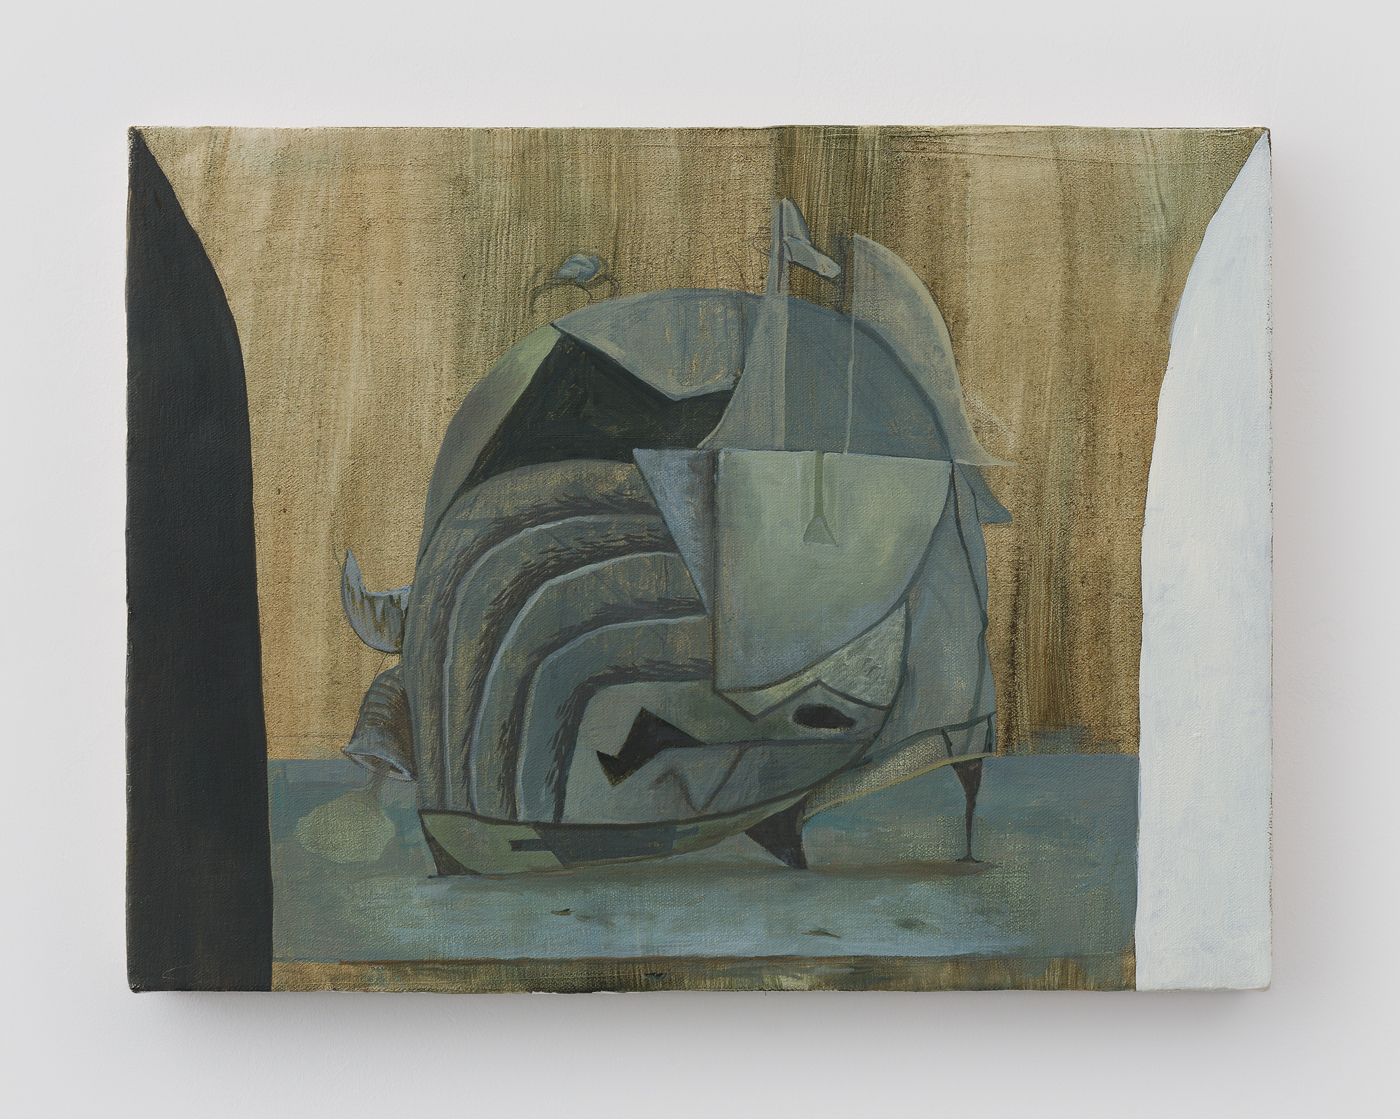  Still Life with Sea Dingle, 2015 Oil on Canvas 12" x 16" 